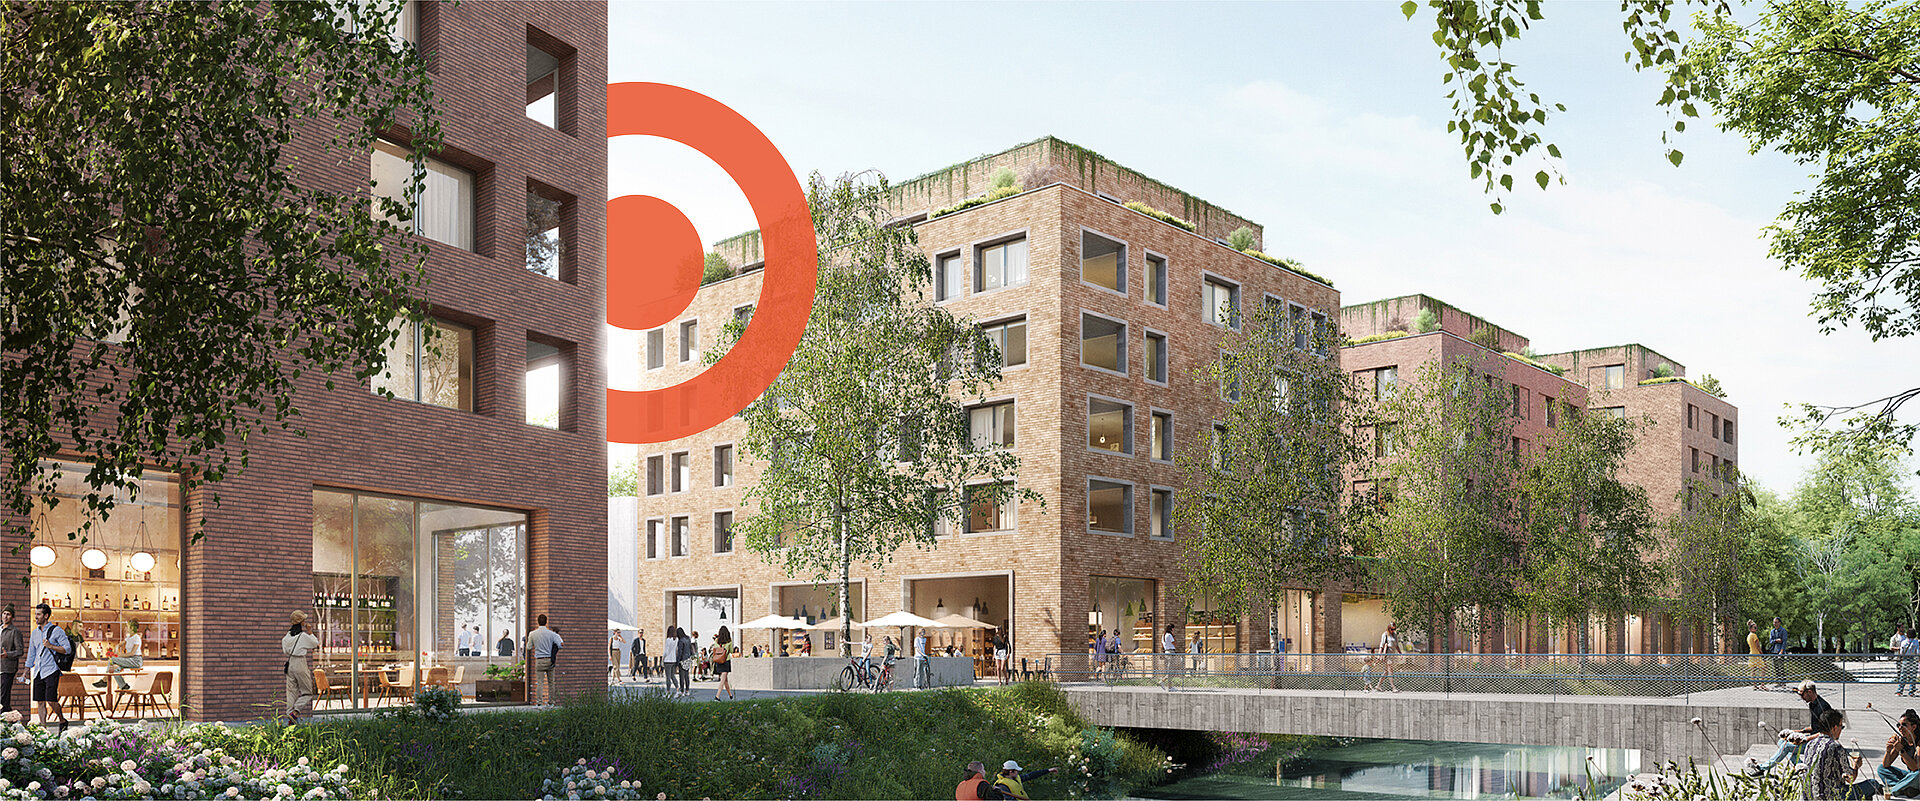 Rendering der vier neuen Gebäude vom Projekt DICHTER4 in Ulm mit orangem PRISMA Logoelement im Hintergrund.